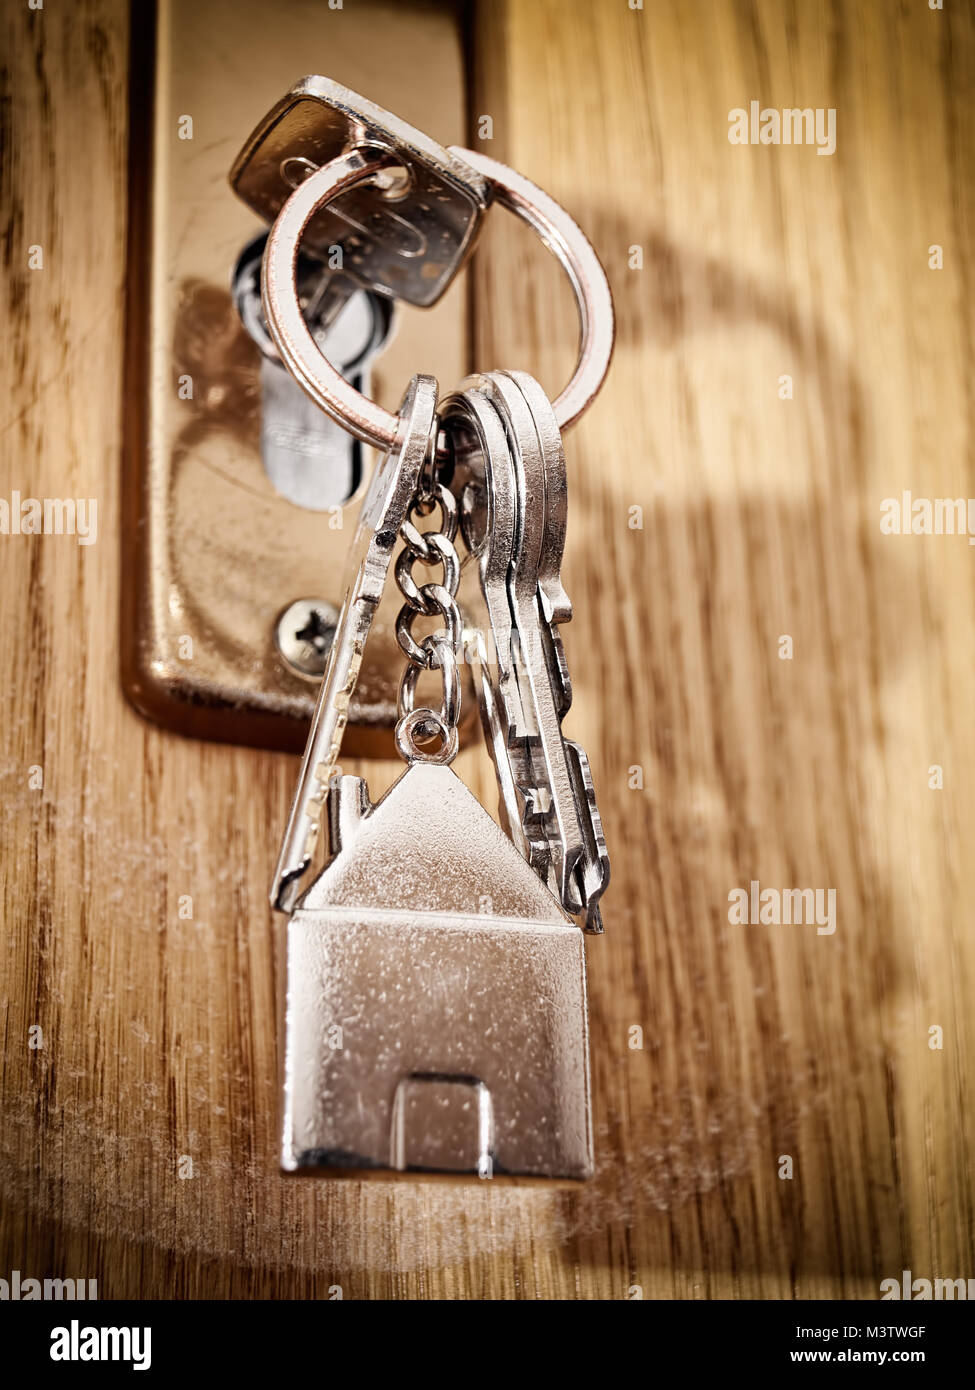 Closeup view of home keys in the door lock. Stock Photo